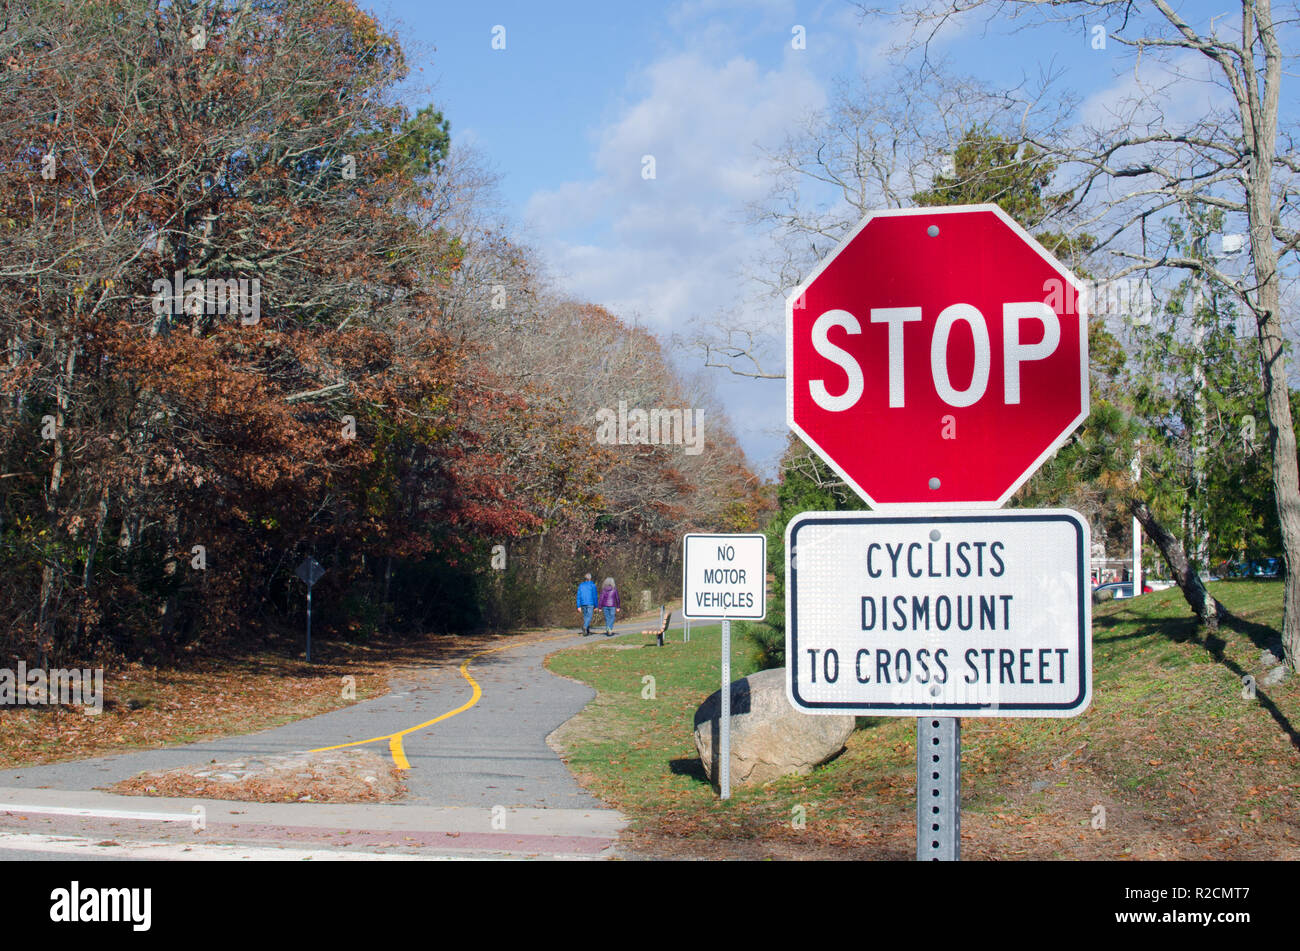 Mare splendente Bikeway firmare con il segnale di arresto, n. veicoli a motore segno e i ciclisti smontare a Cross Street in Falmouth, Cape Cod, Massachusetts, STATI UNITI D'AMERICA Foto Stock